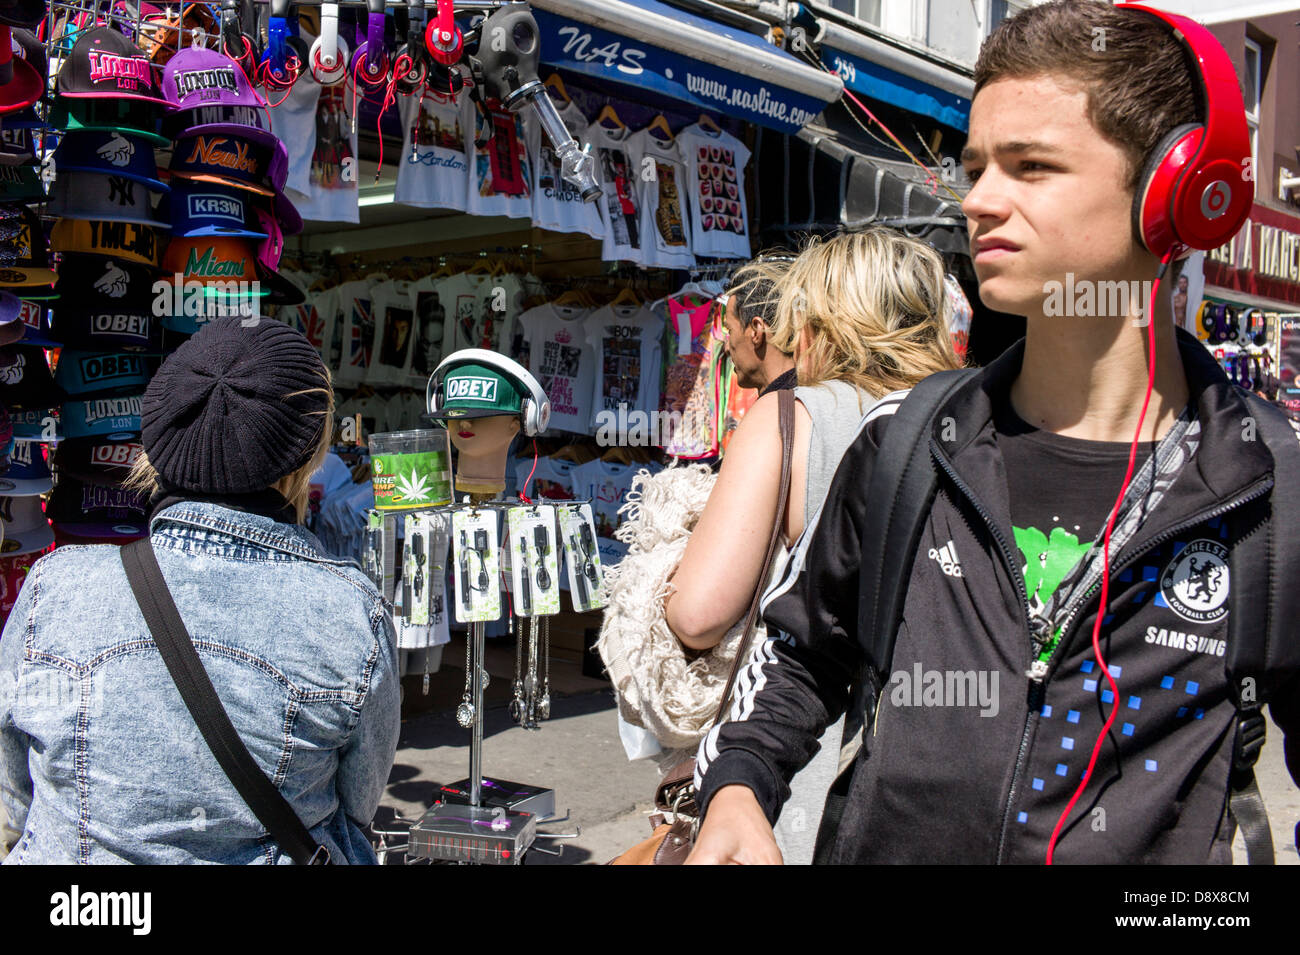 Londres, Reino Unido, Camden Town, el mercado de Camden, joven, hombre, usando audífonos, y turista, compradores, mirando los puestos de mercado Foto de stock